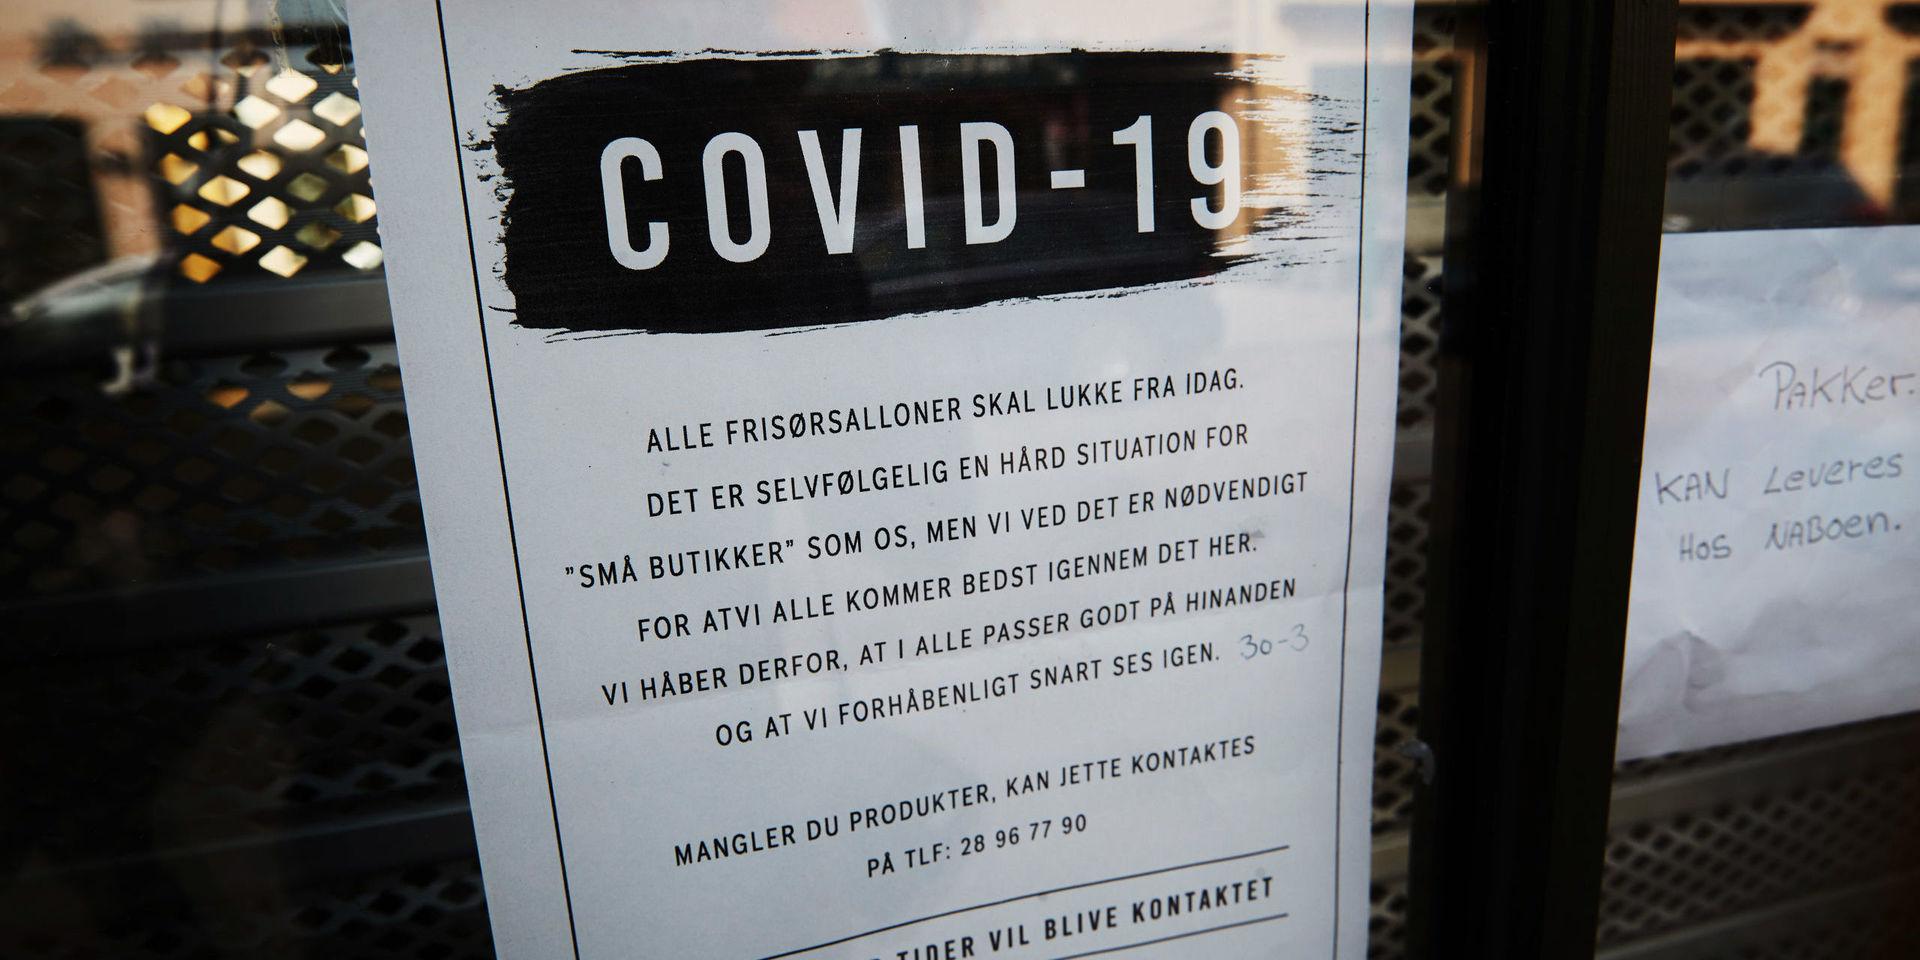 Covid-19 har gjort att frisörer tvingats stänga i Danmark.